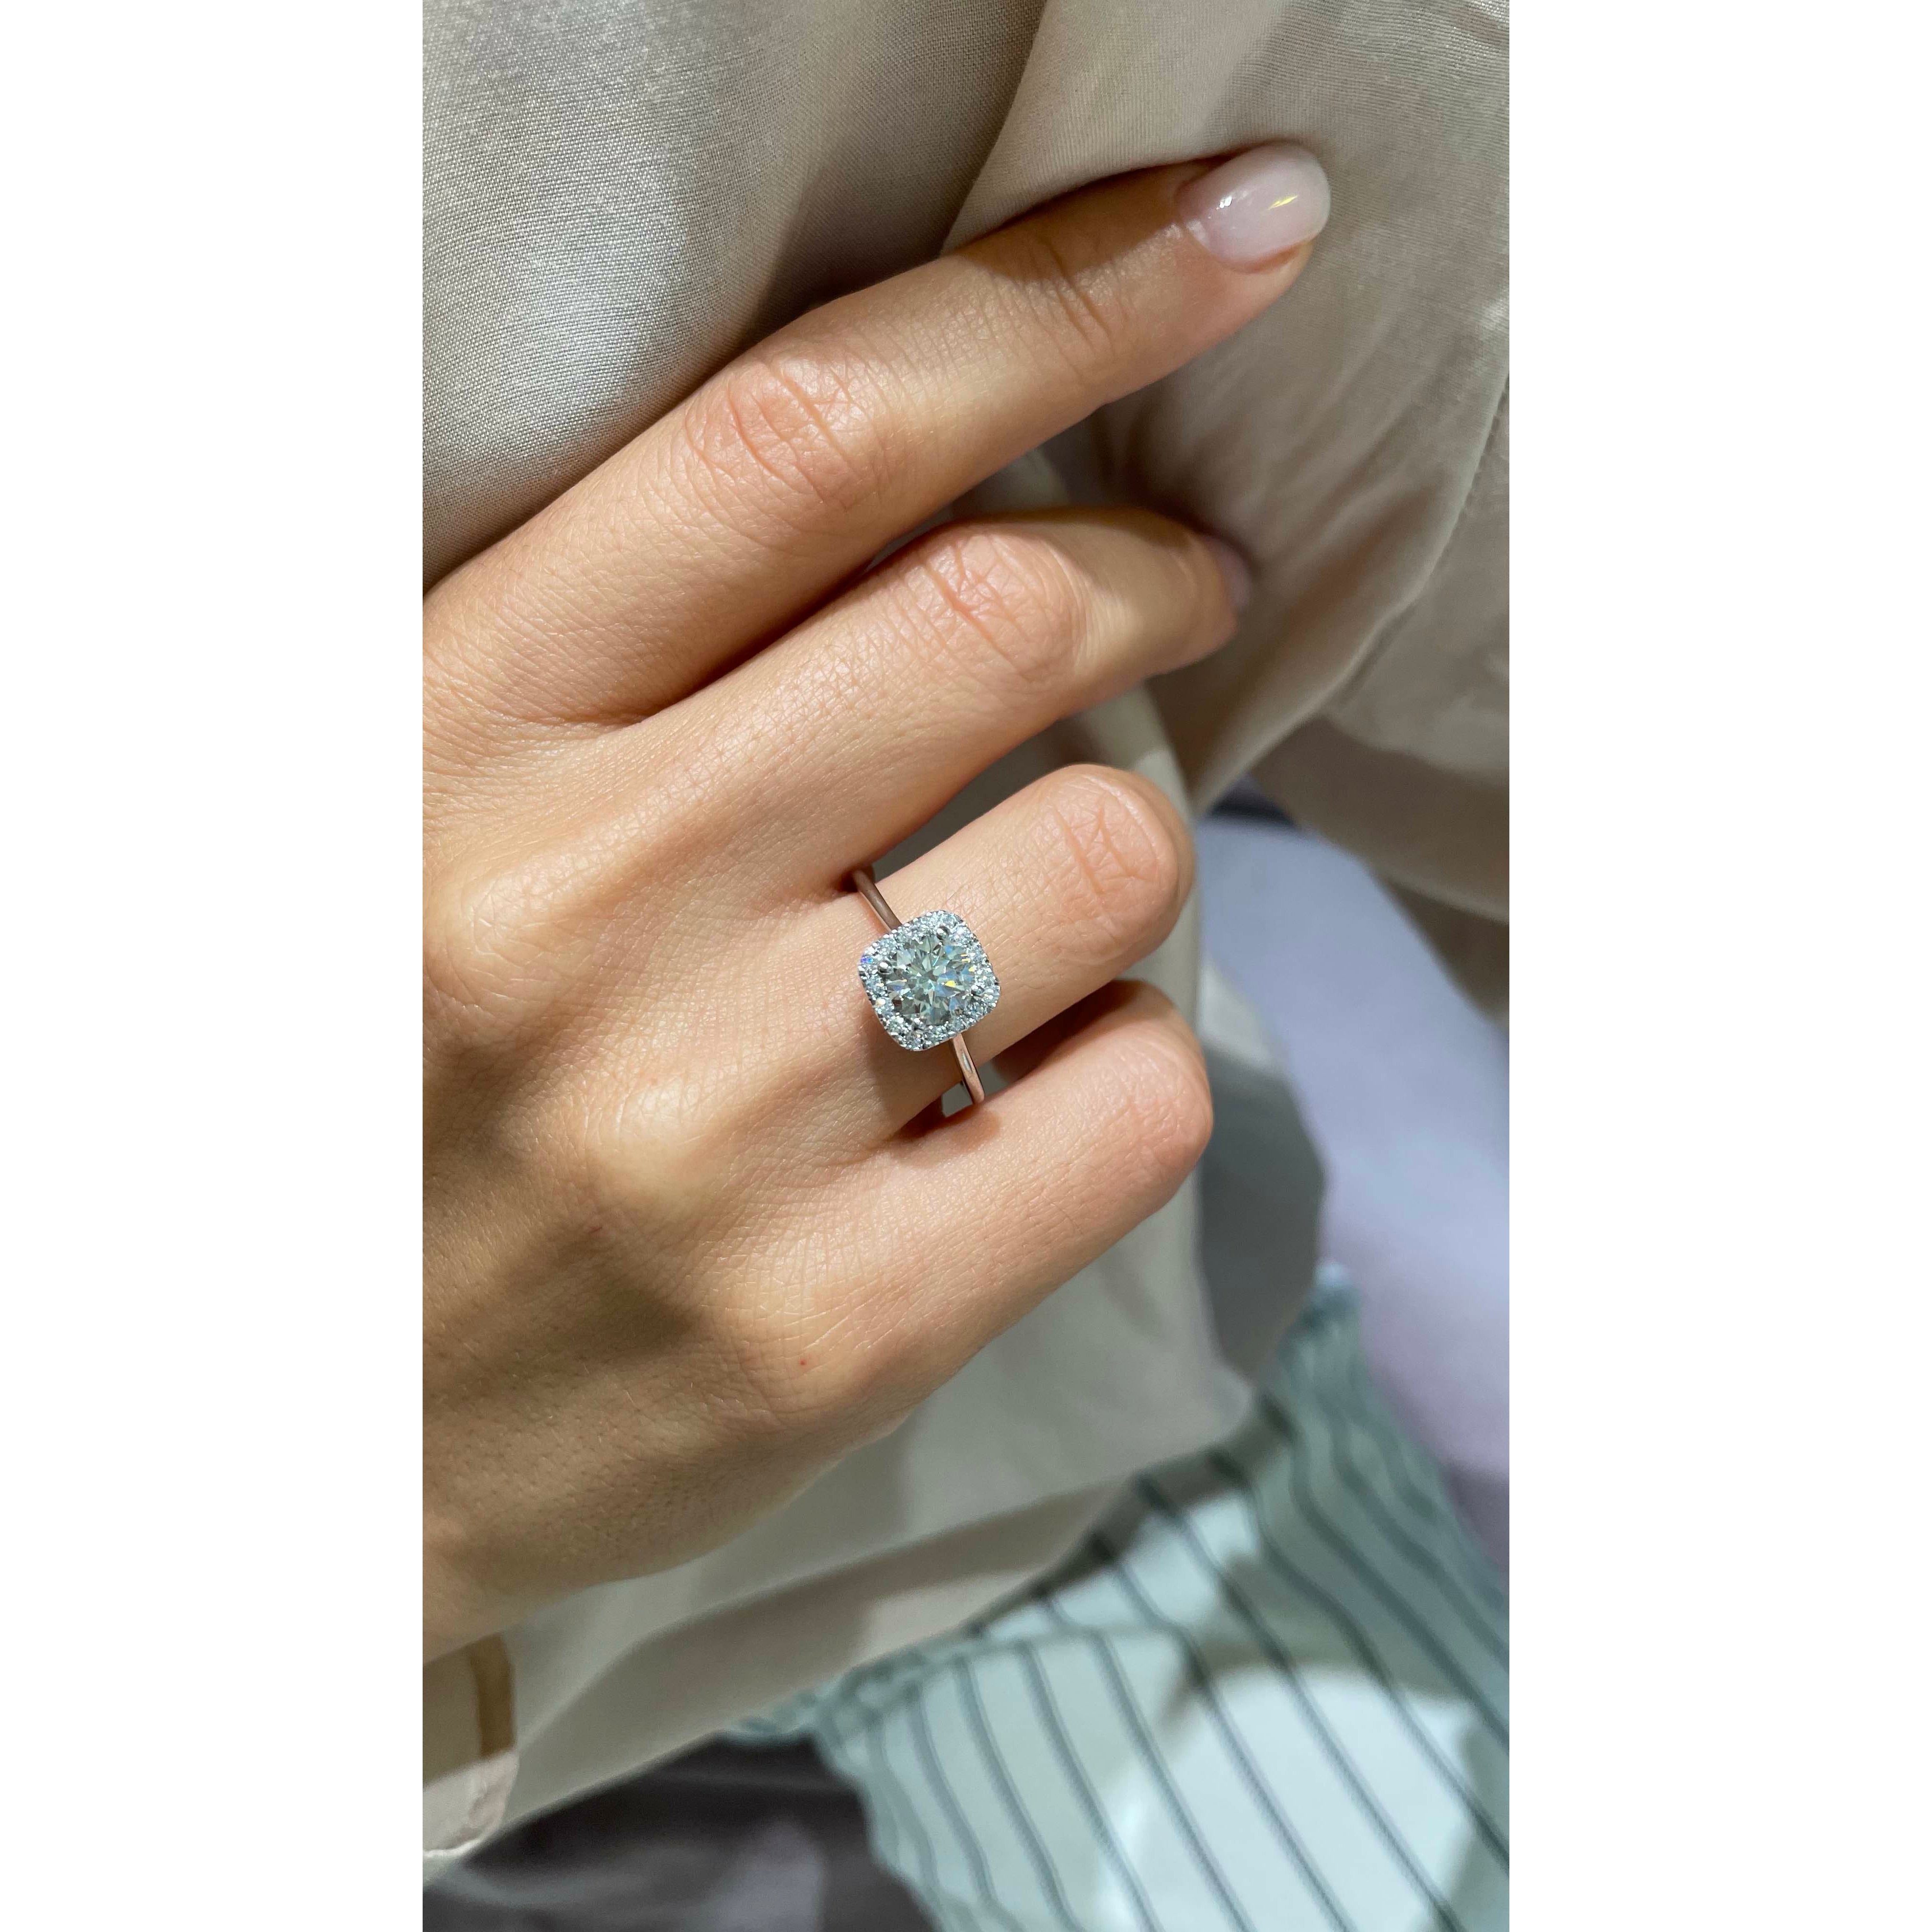 Claudia Lab Grown Diamond Ring   (1.15 Carat) -18K White Gold